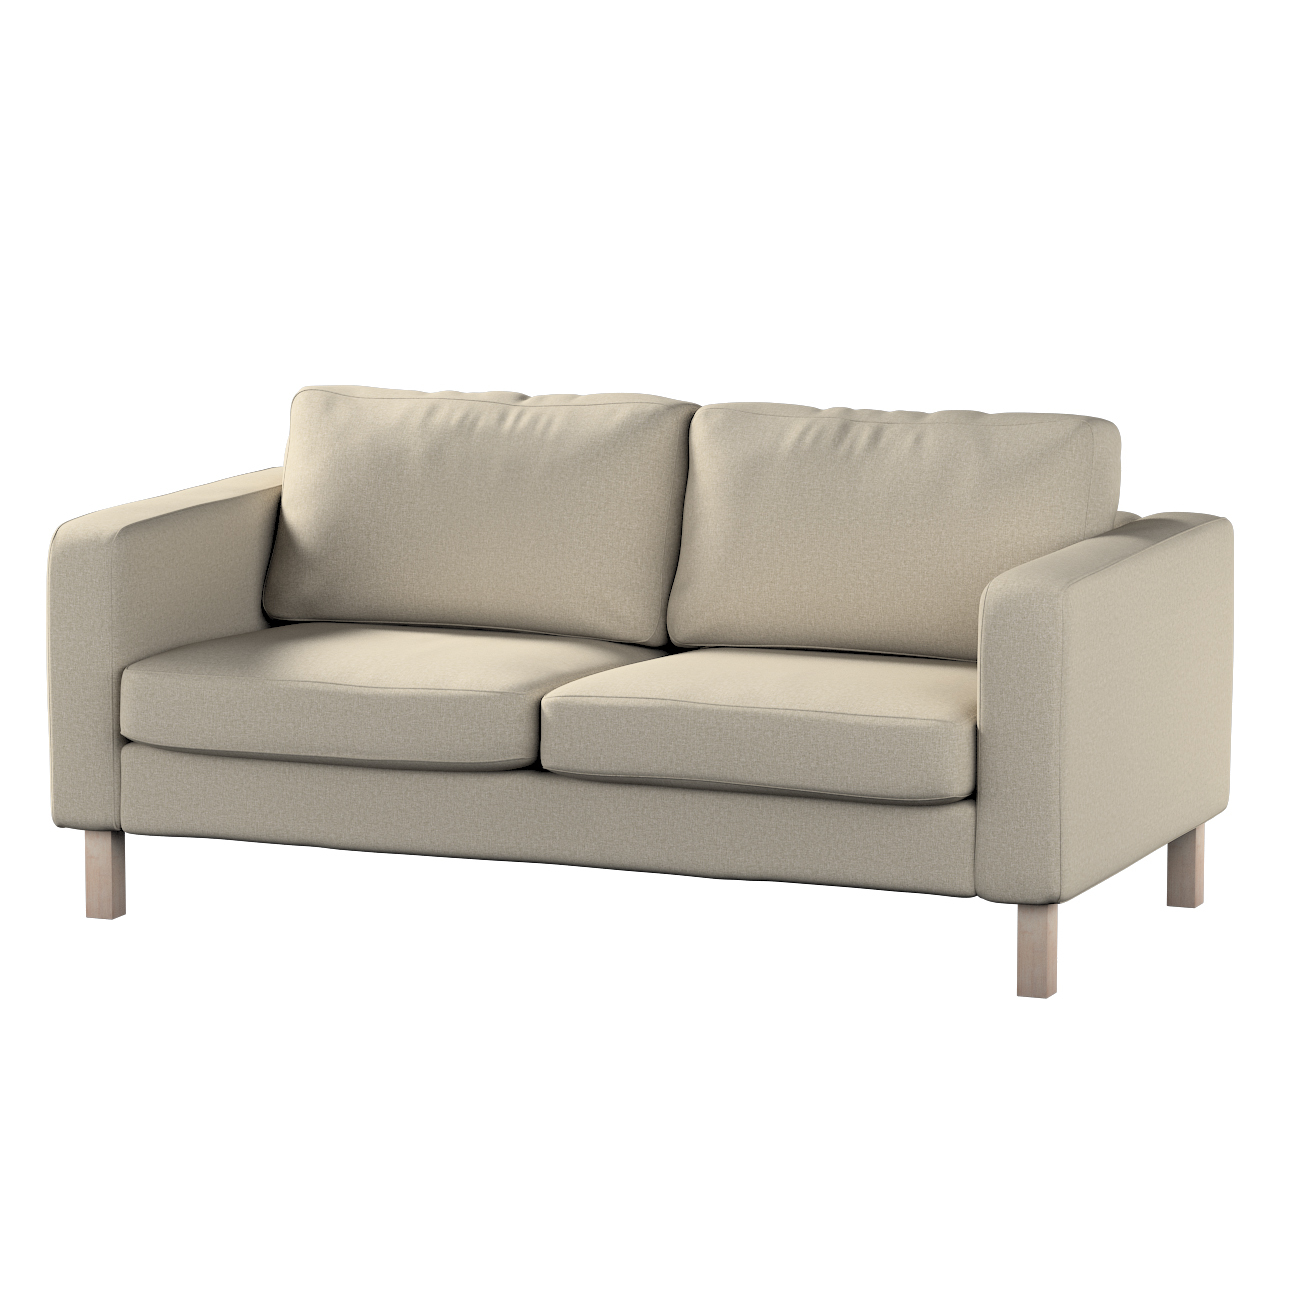 Bezug für Karlstad 2-Sitzer Sofa nicht ausklappbar, grau-beige, Sofahusse, günstig online kaufen